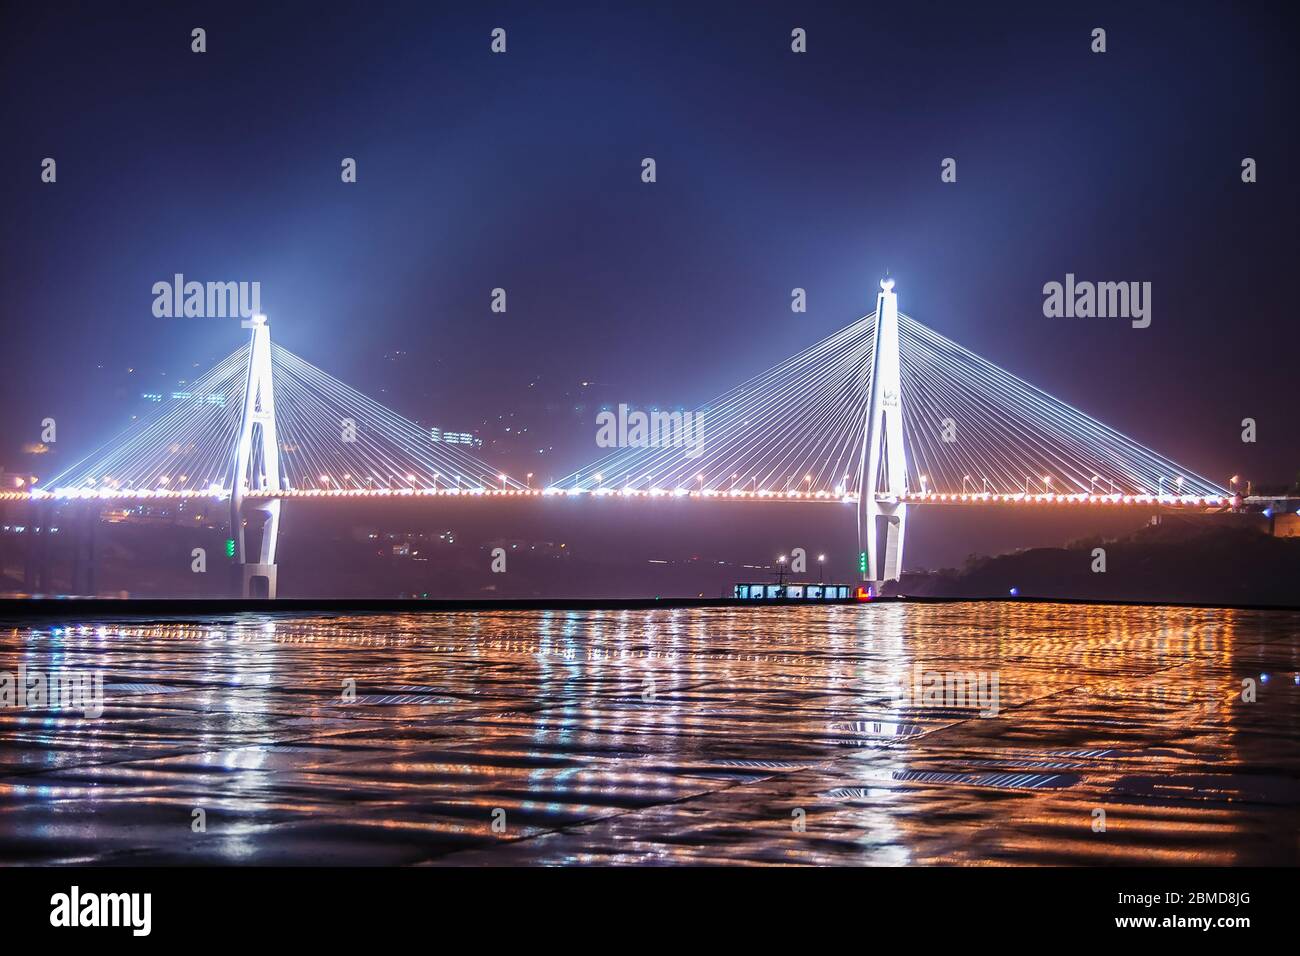 Xinling, Cina - 6 maggio 2010: Gola di Xiling sul fiume Yangtze. Foto notturna del ponte Badong con i suoi 2 piloni e completamente illuminato in 3 colori, Refl Foto Stock